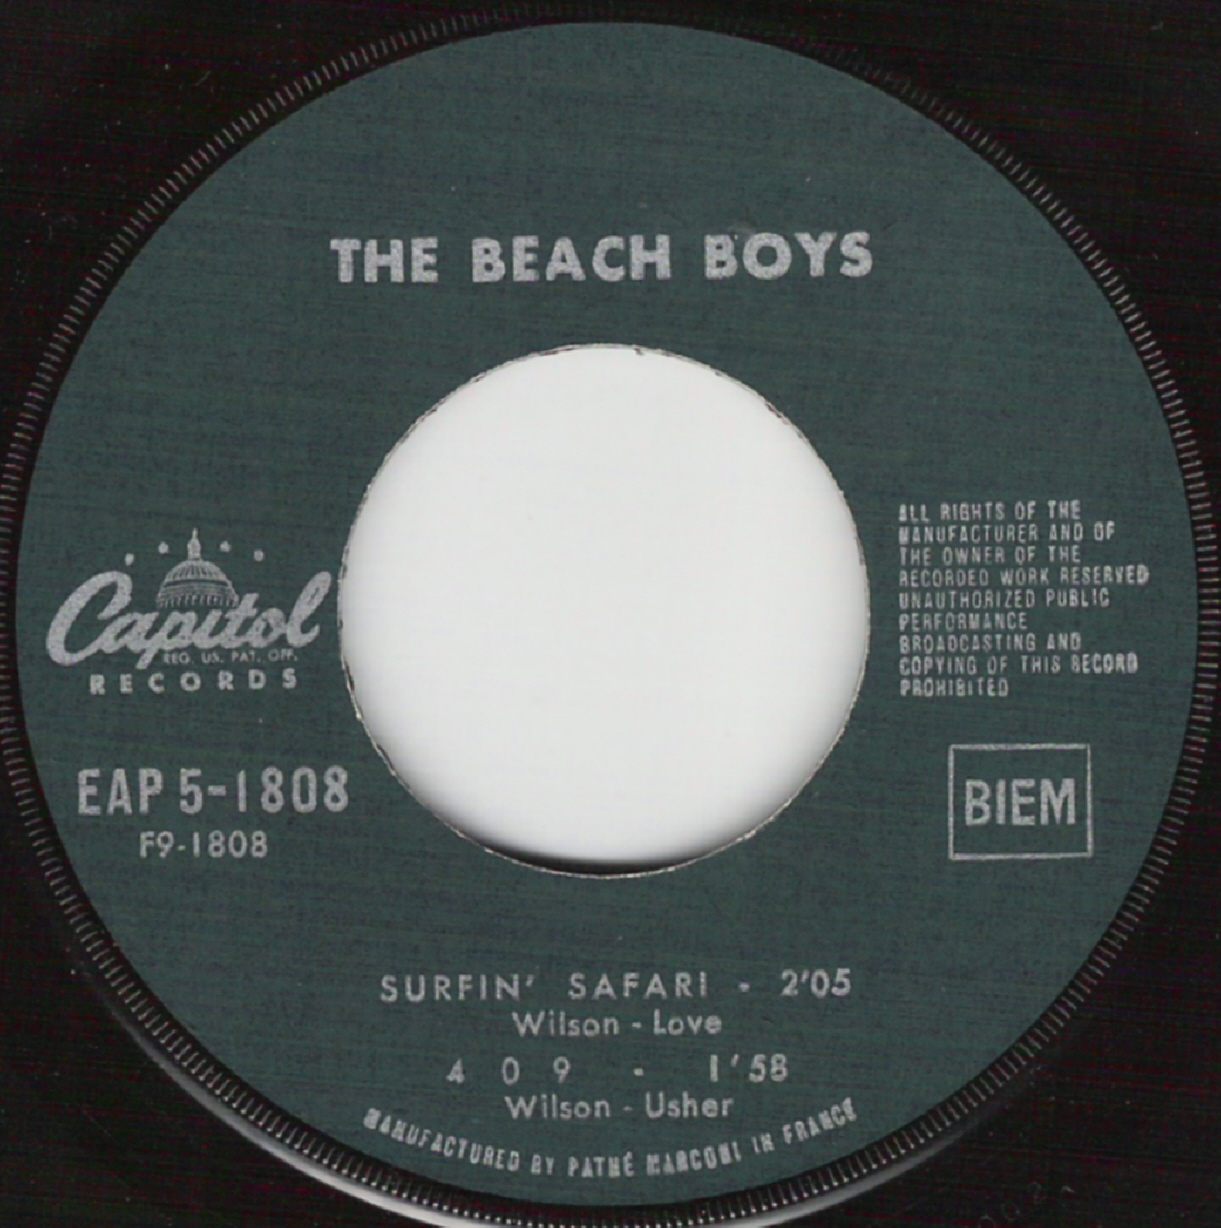 Beach Boys on 45 - France - EP's Capitol